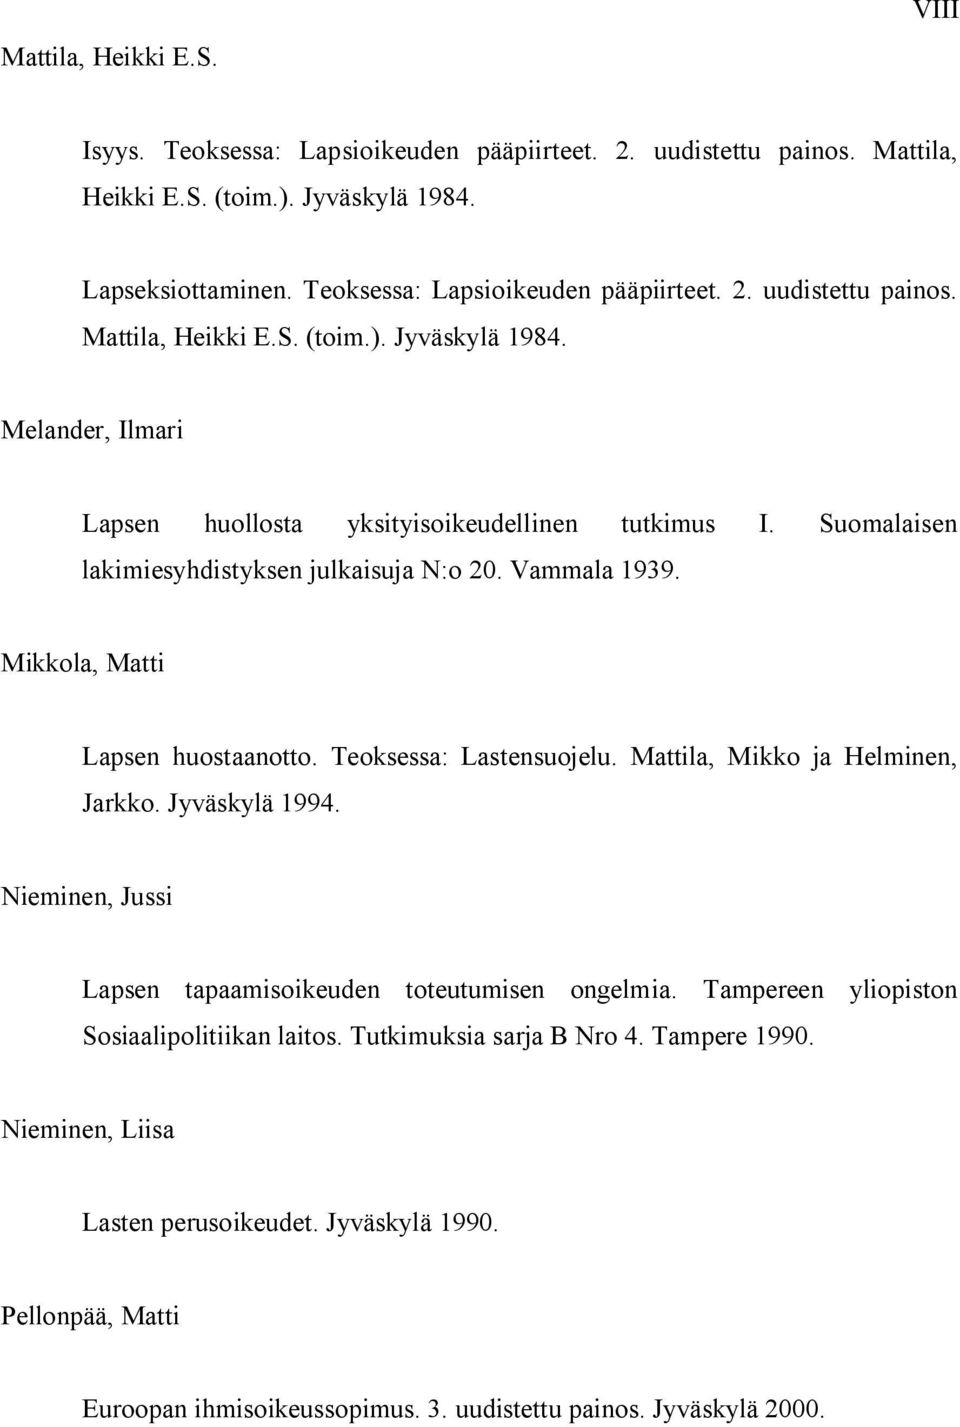 Suomalaisen lakimiesyhdistyksen julkaisuja N:o 20. Vammala 1939. Mikkola, Matti Lapsen huostaanotto. Teoksessa: Lastensuojelu. Mattila, Mikko ja Helminen, Jarkko. Jyväskylä 1994.